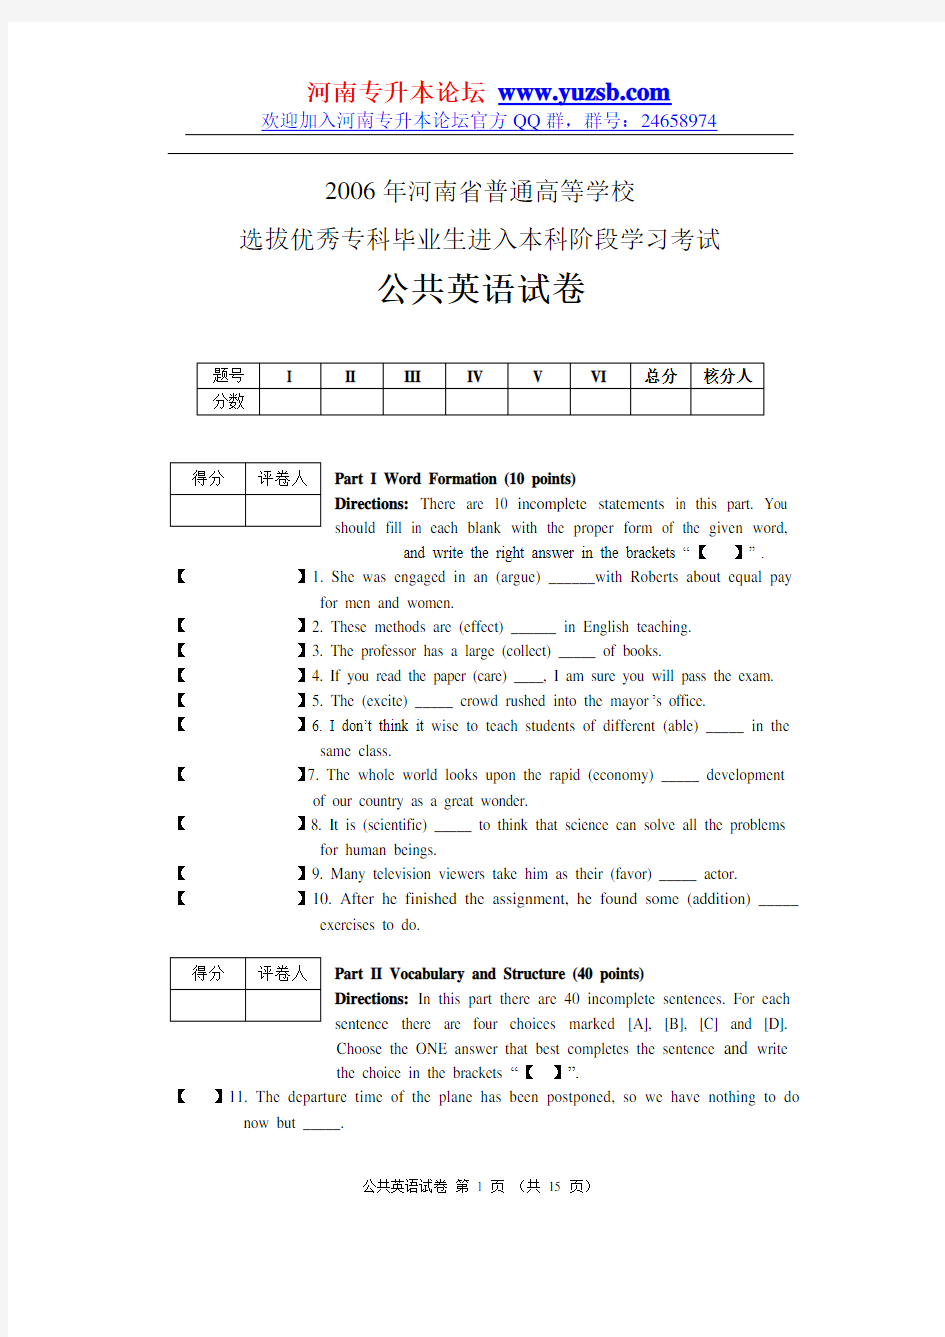 2006年河南省专升本考试公共英语试题及答案[1]